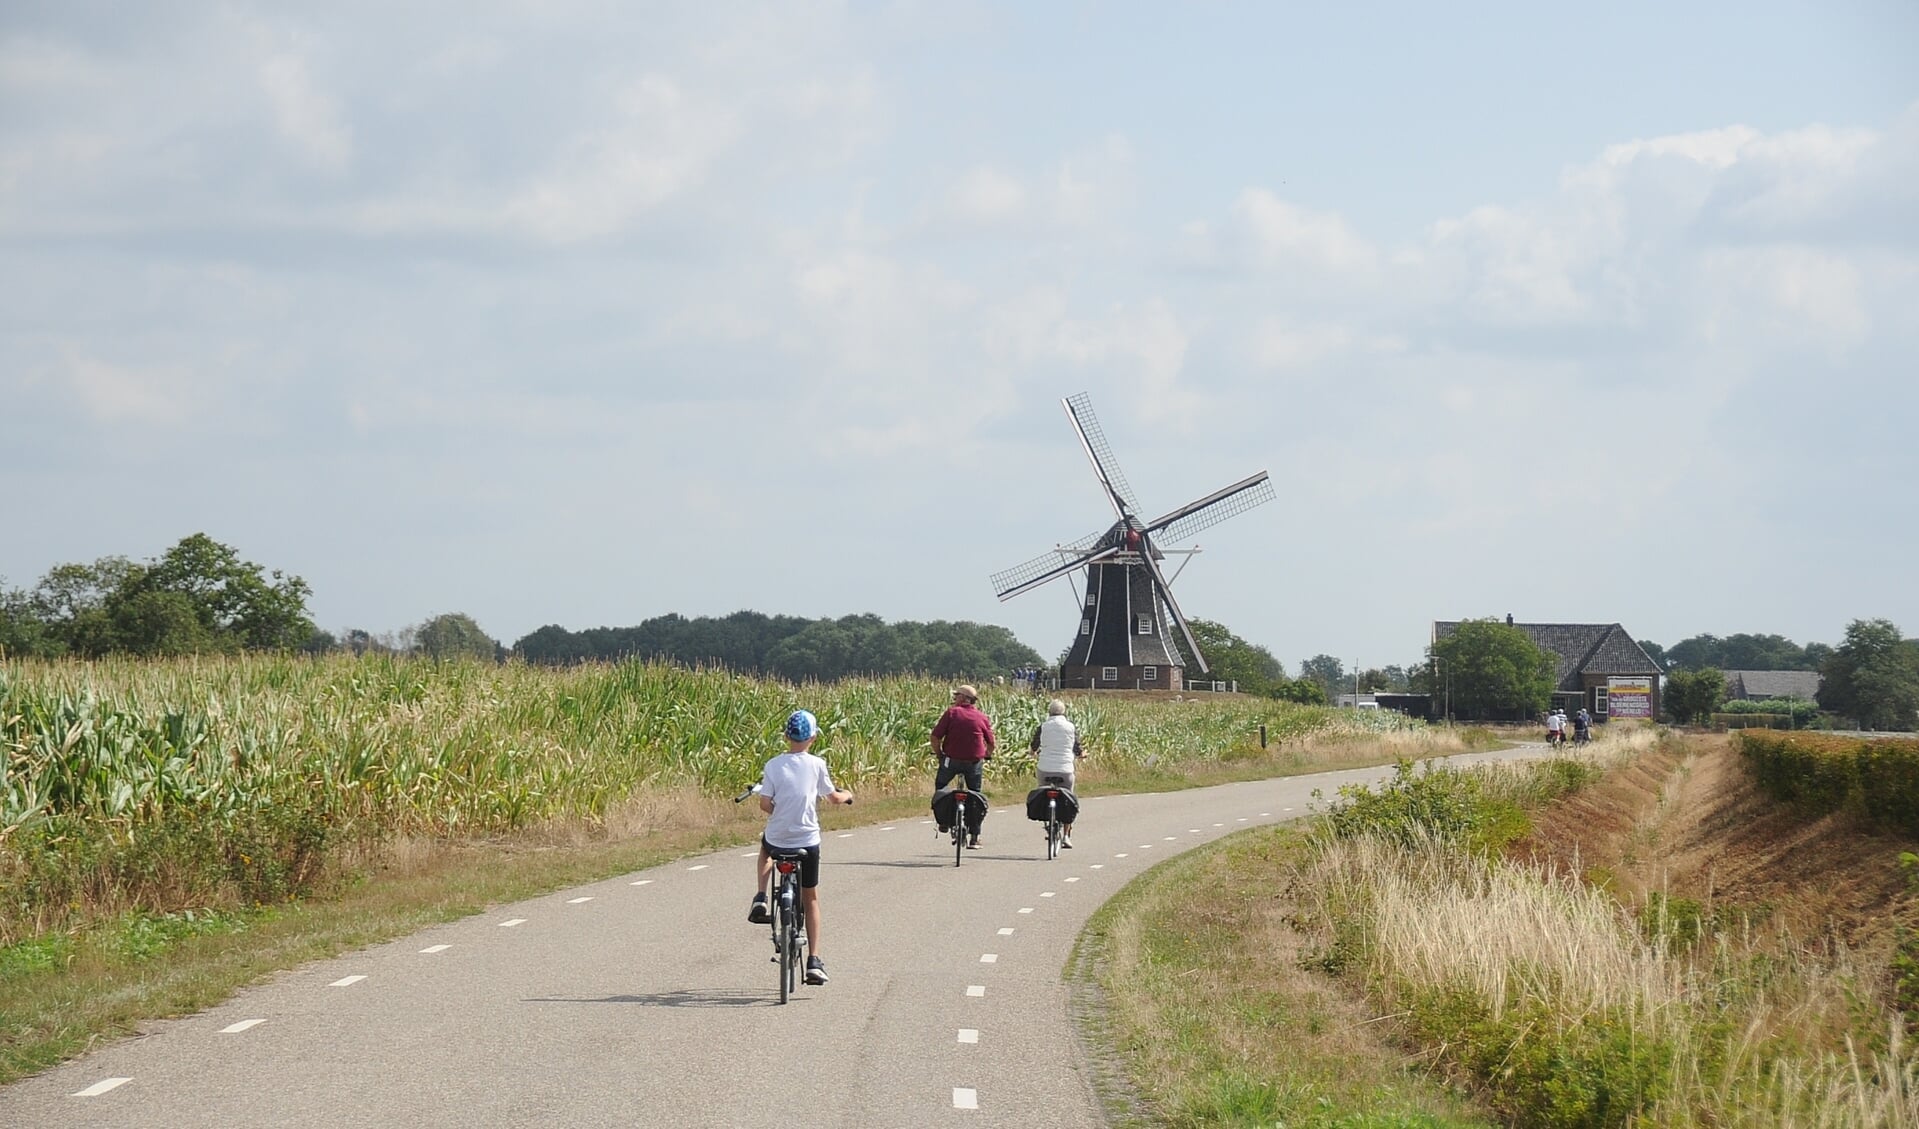 Stap op de fiets om de gemeente Bronckhorst te verkennen. Foto: Achterhoekfoto.nl/Johan Braakman